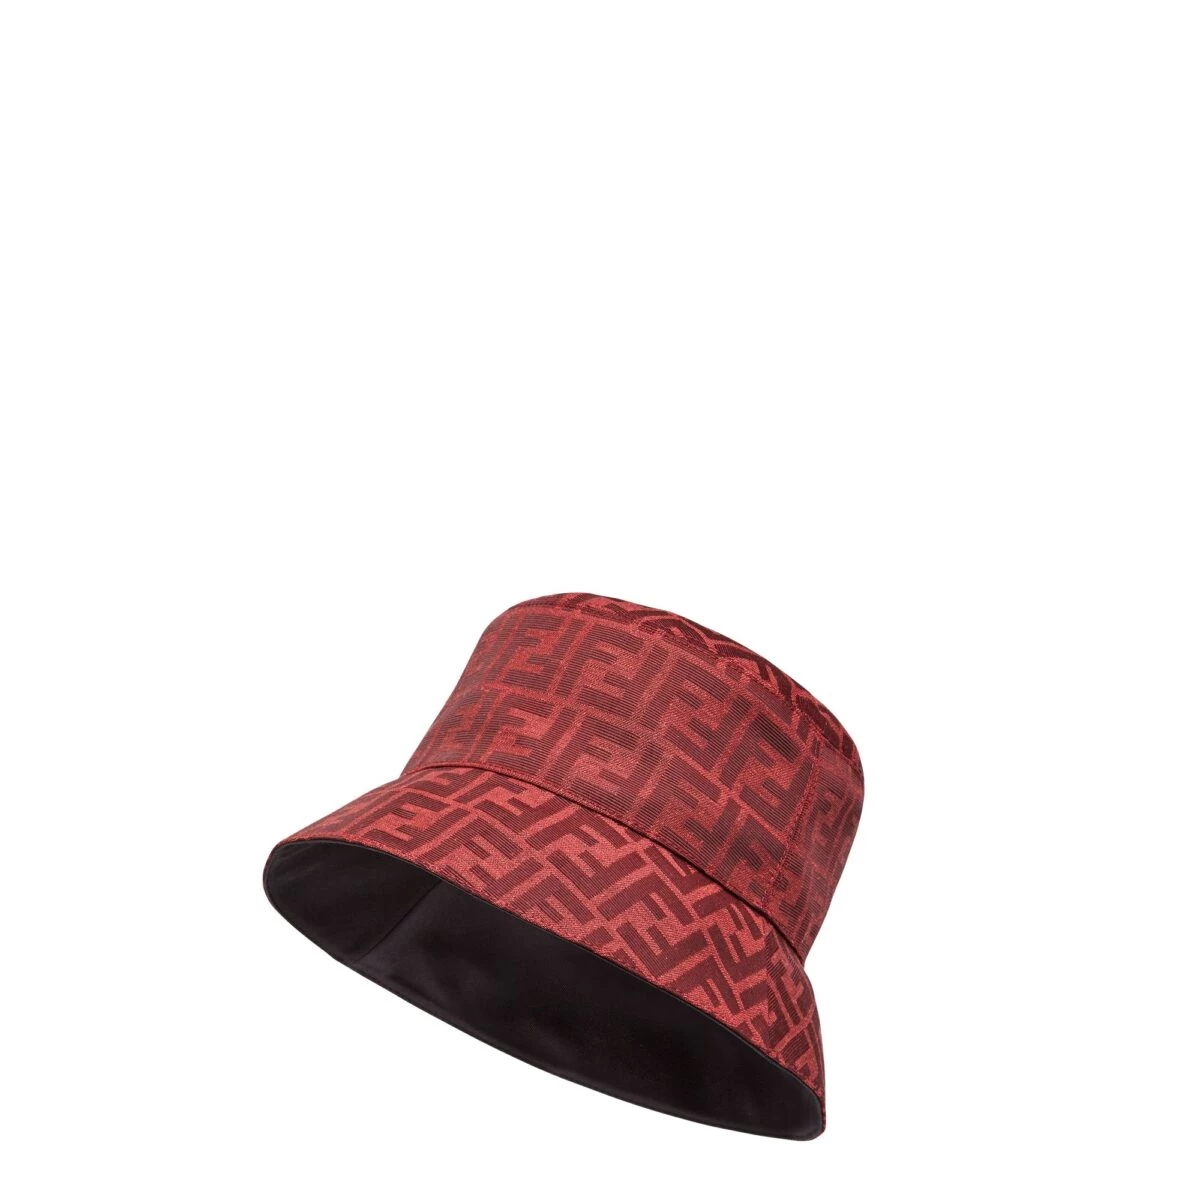 წითელი - Fendi კაფსულის კოლექციის ძირითადი ფერი ჩინურ ახალ წელს 18842_16